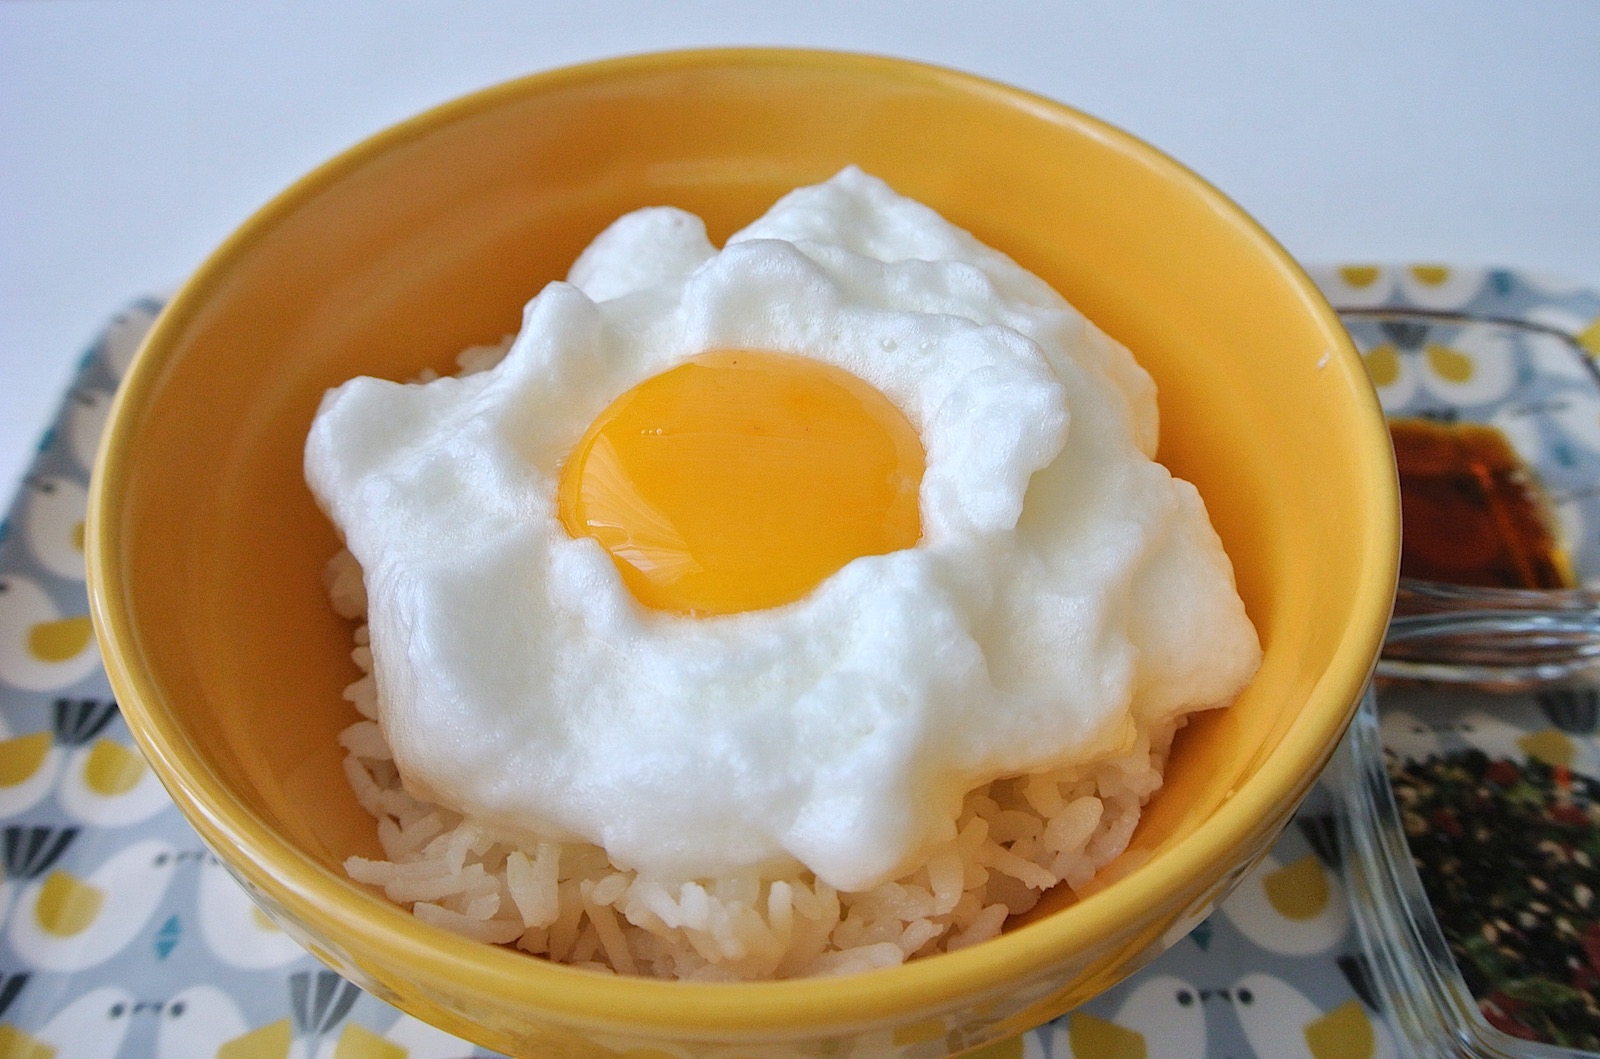 究極のtkg ふっわふわの メレンゲ卵かけご飯 にチャレンジ 白身を泡立てるだけで超絶オシャレな朝食になりました Pouch ポーチ